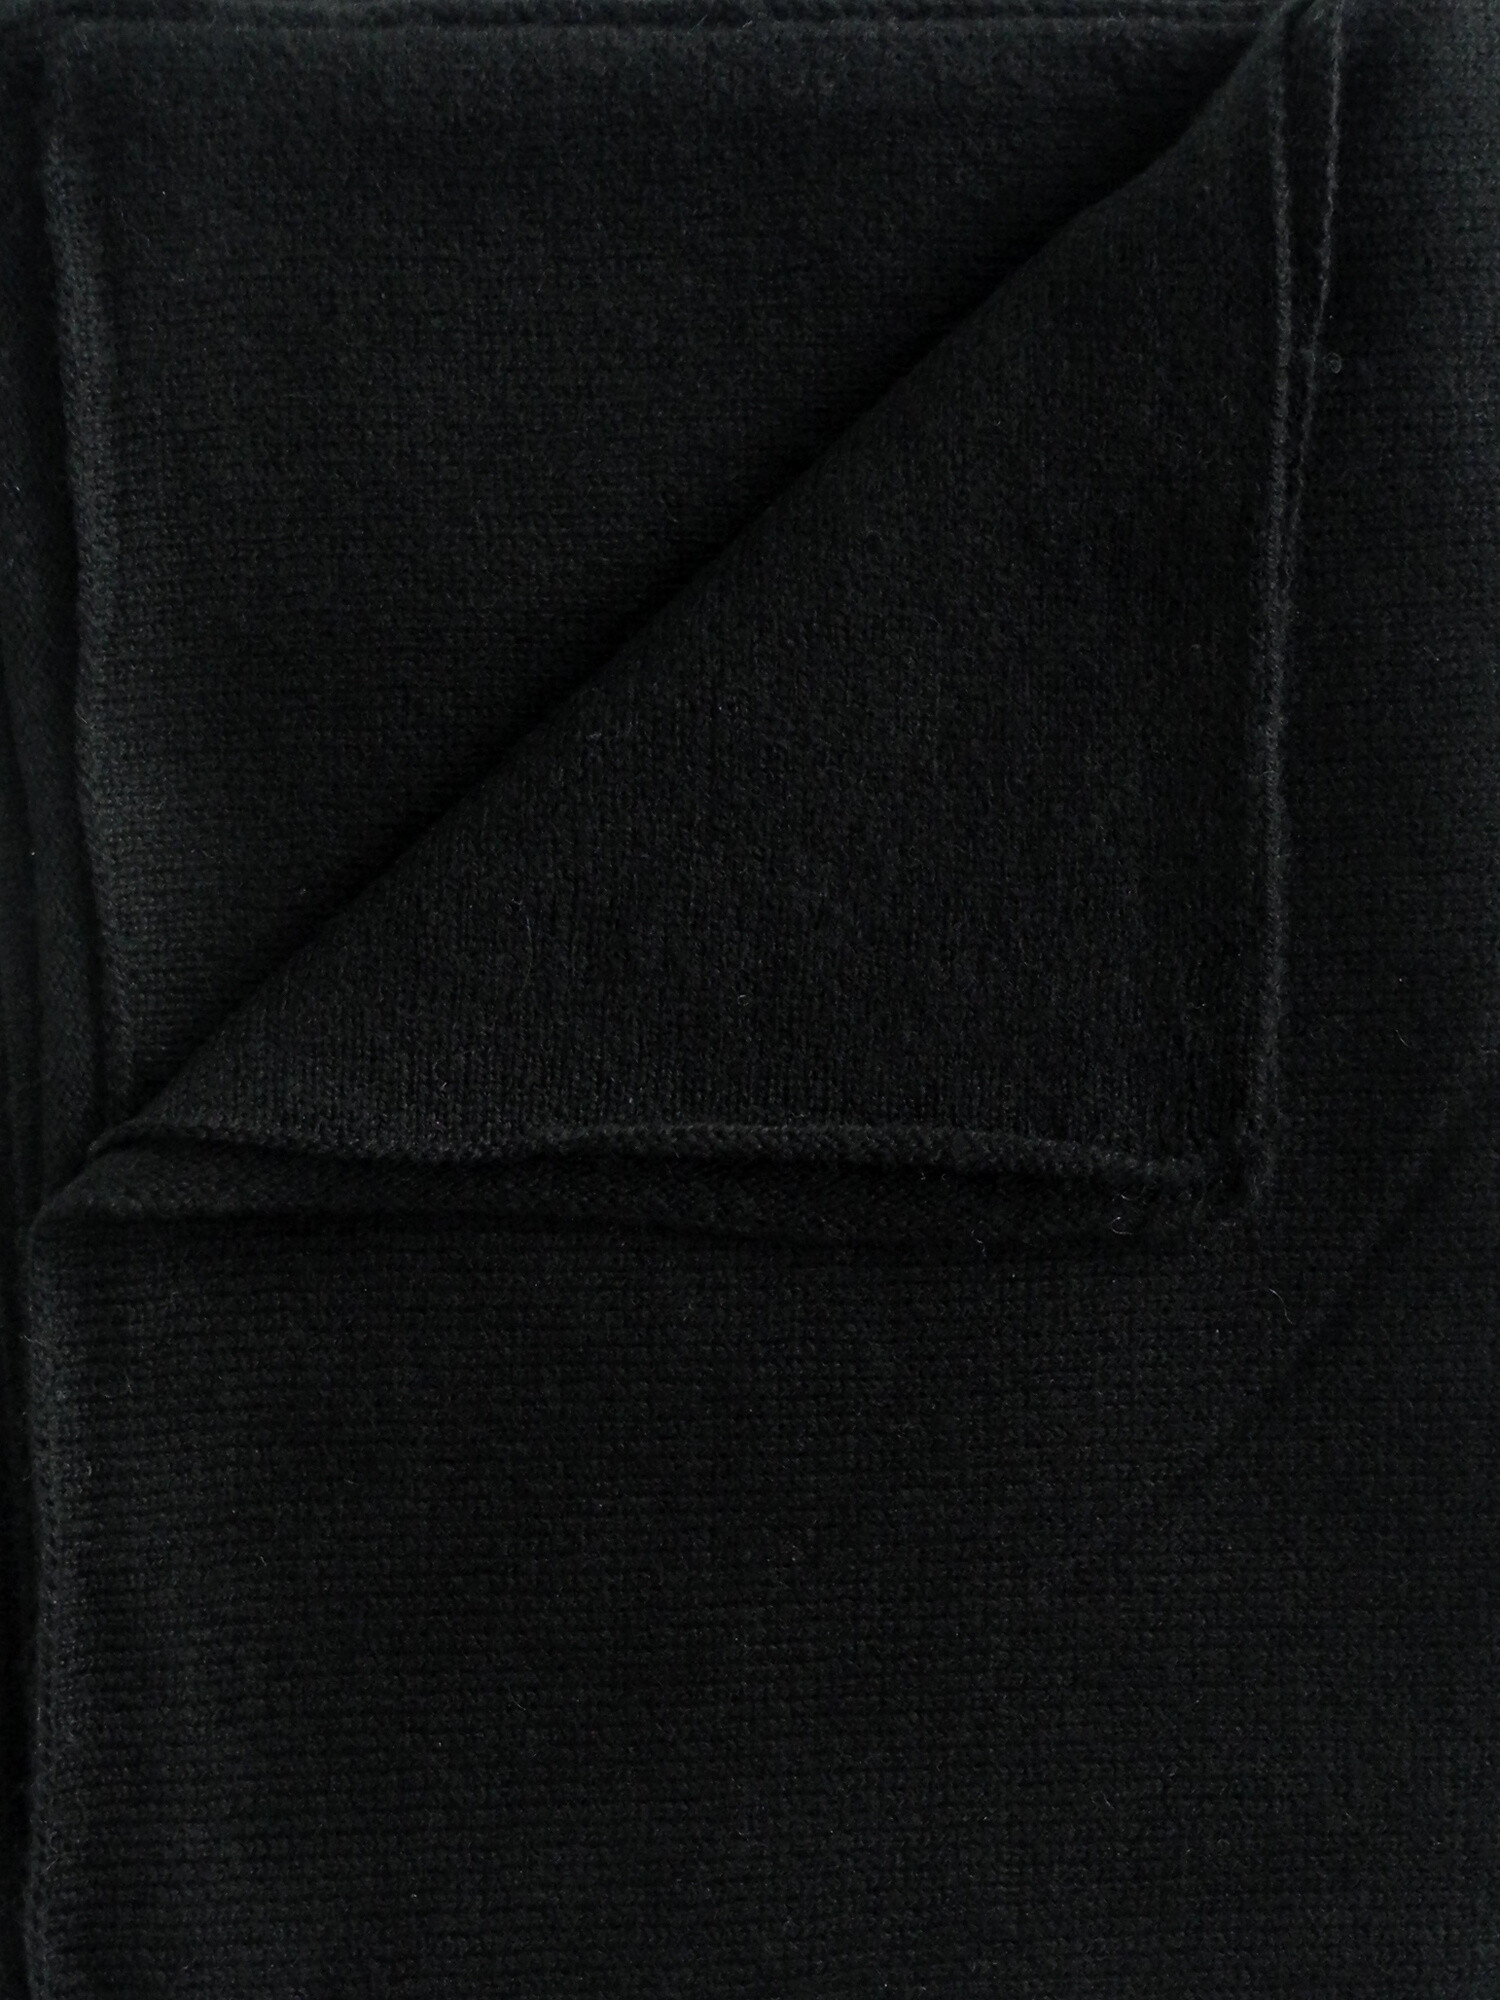 C.O.S.Y by SjaalMania Cosy Scarf 100% Cashmere Solid Black